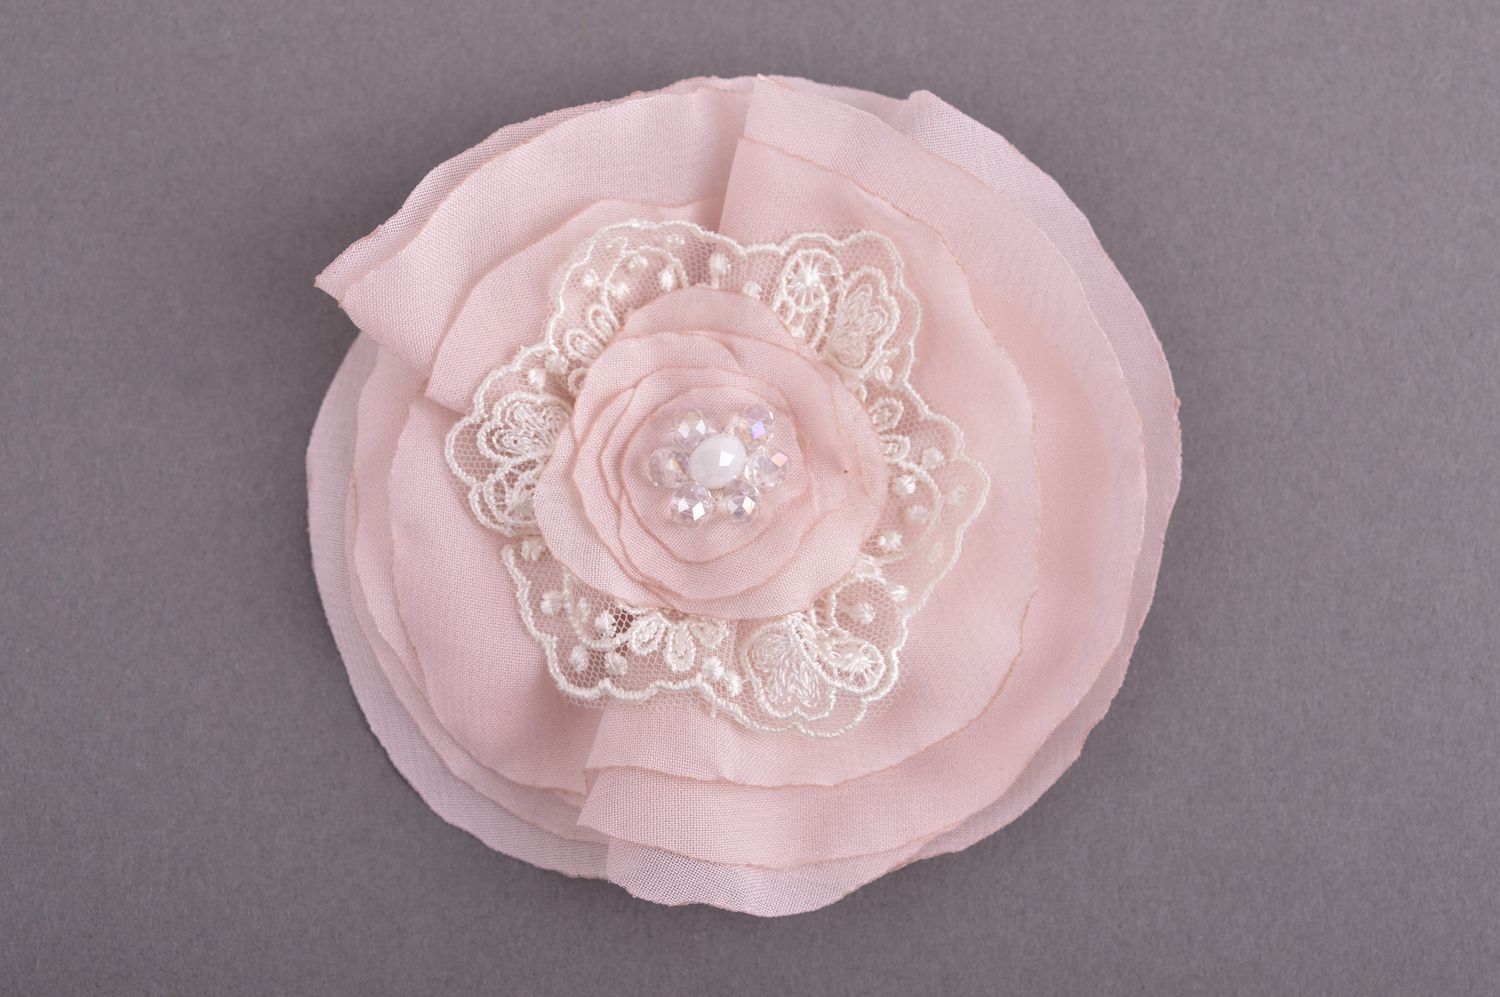 Брошь ручной работы текстильная брошь розовый цветок авторское украшение фото 2